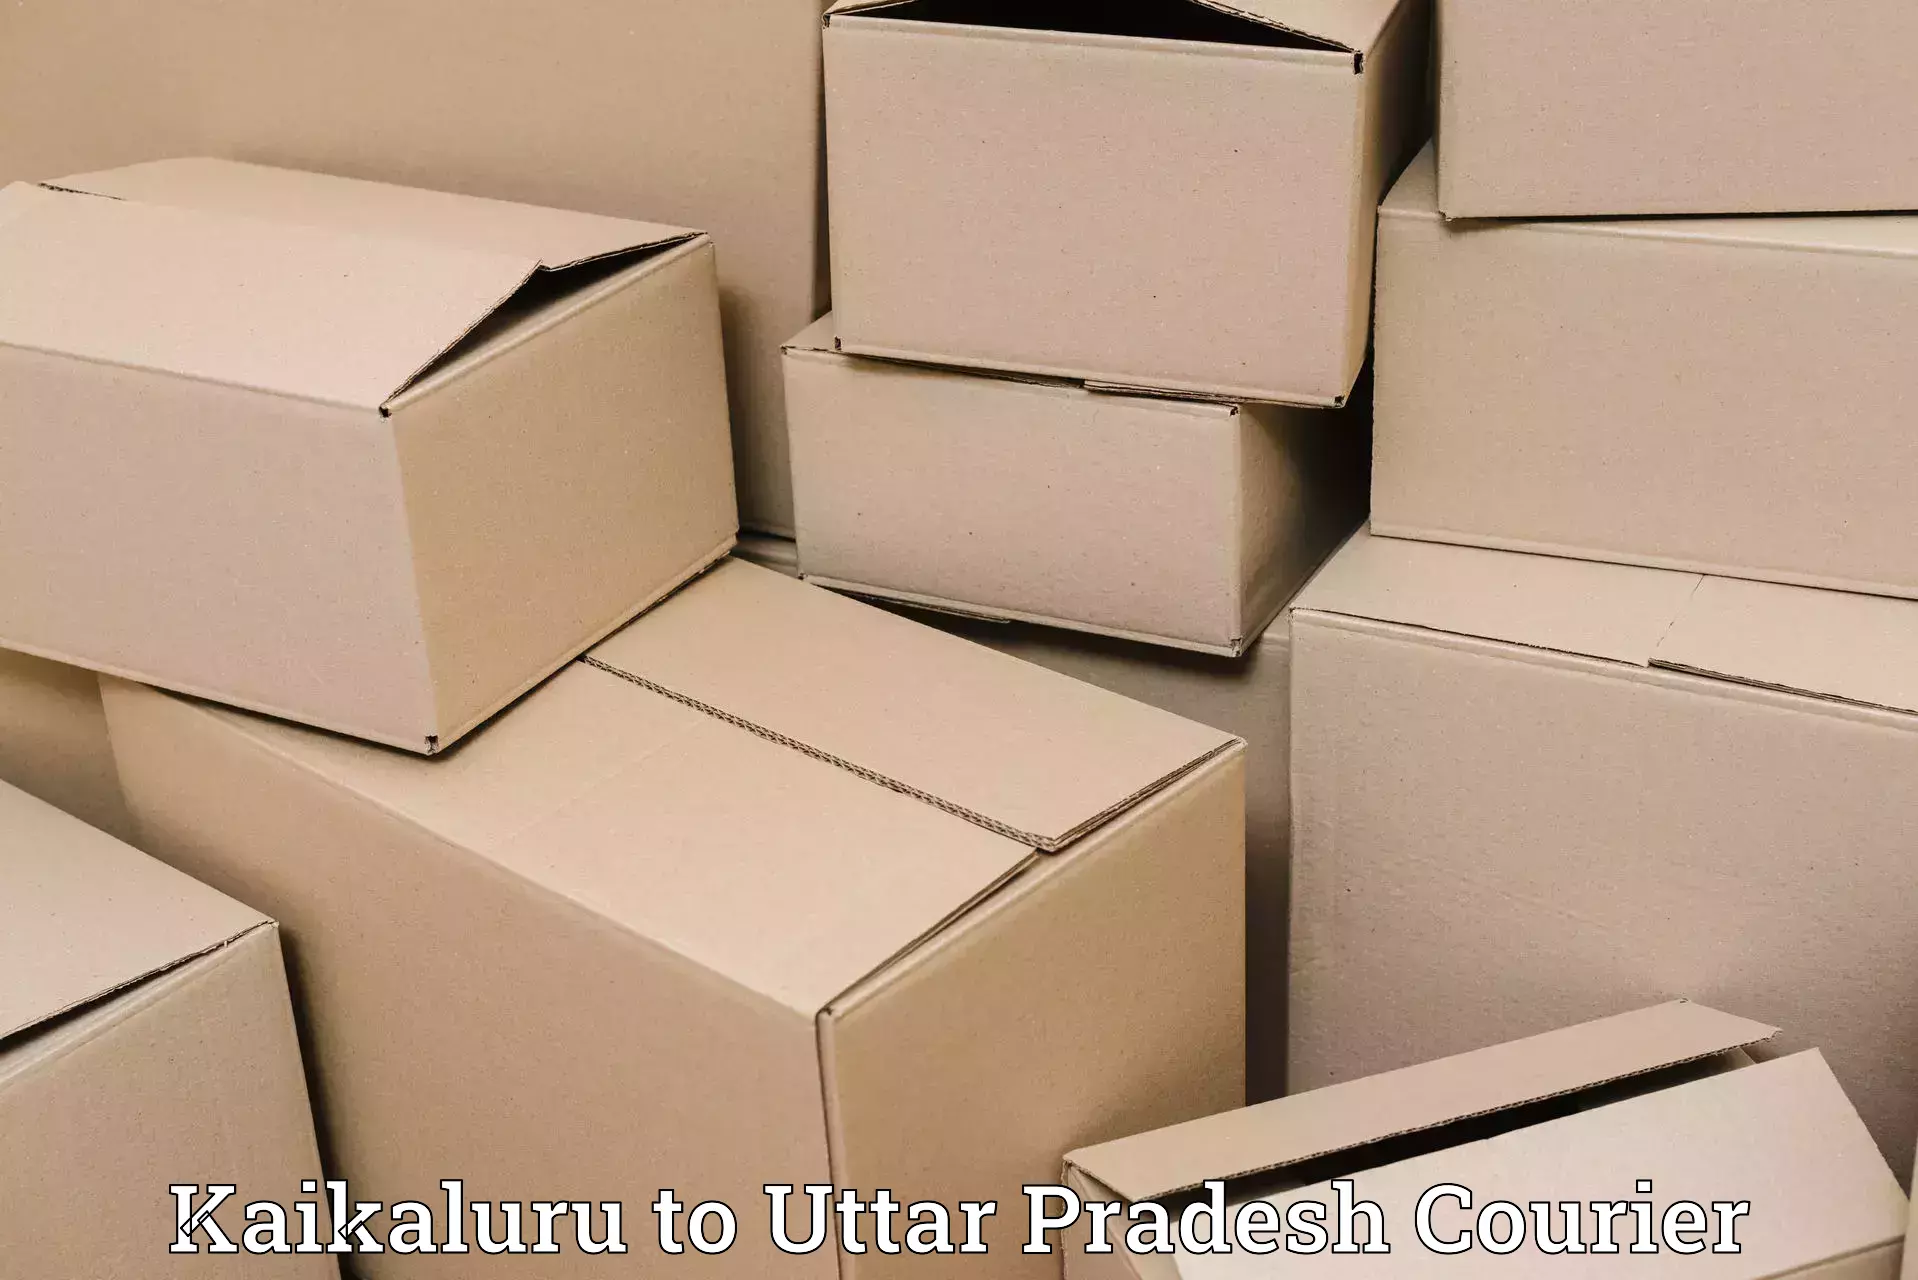 Courier dispatch services Kaikaluru to Kishni